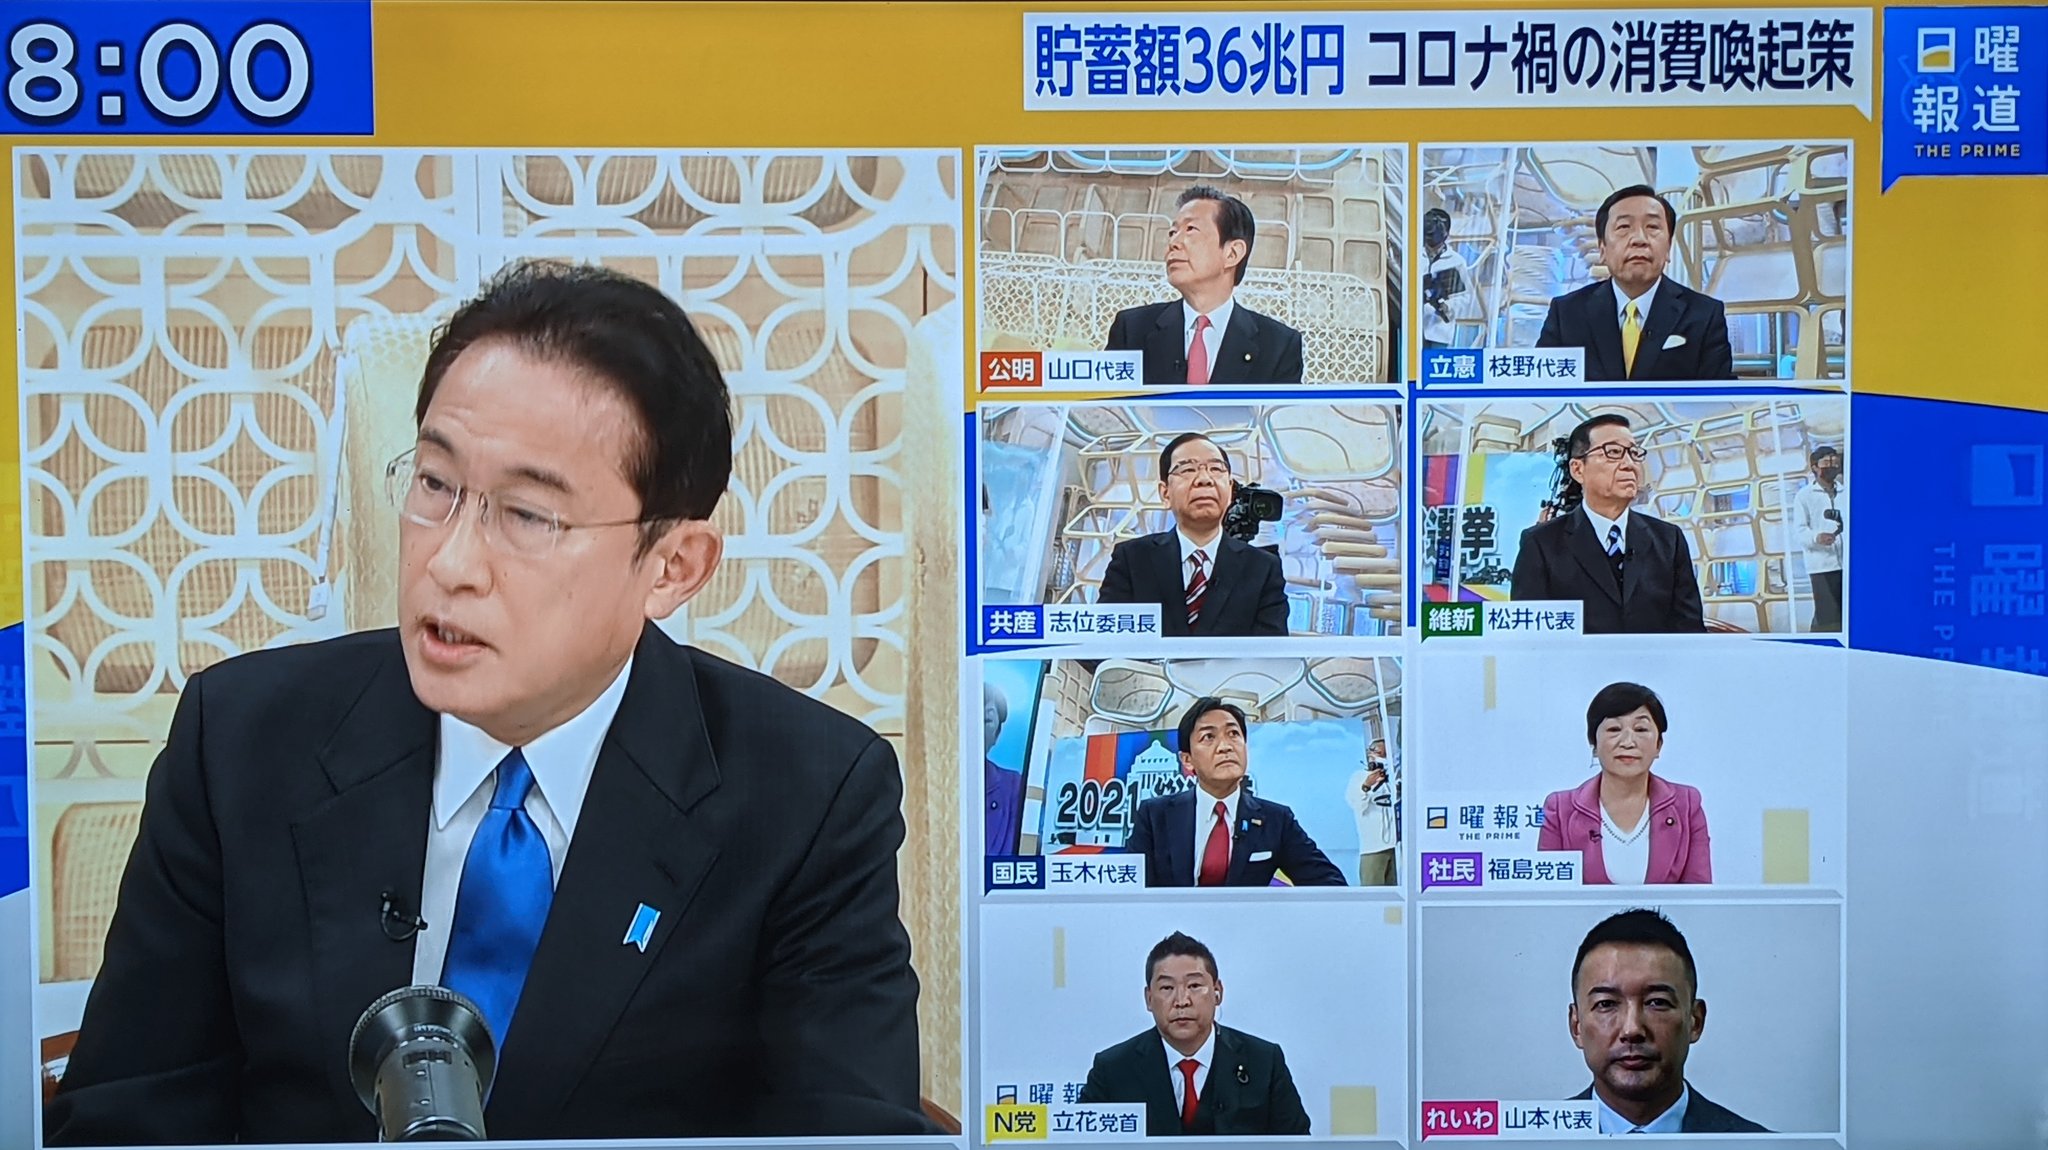 ネタウヨ Netauyo ブルーリボンバッジをしているのは岸田総理と玉木代表だけ T Co U5gotbjipc Twitter